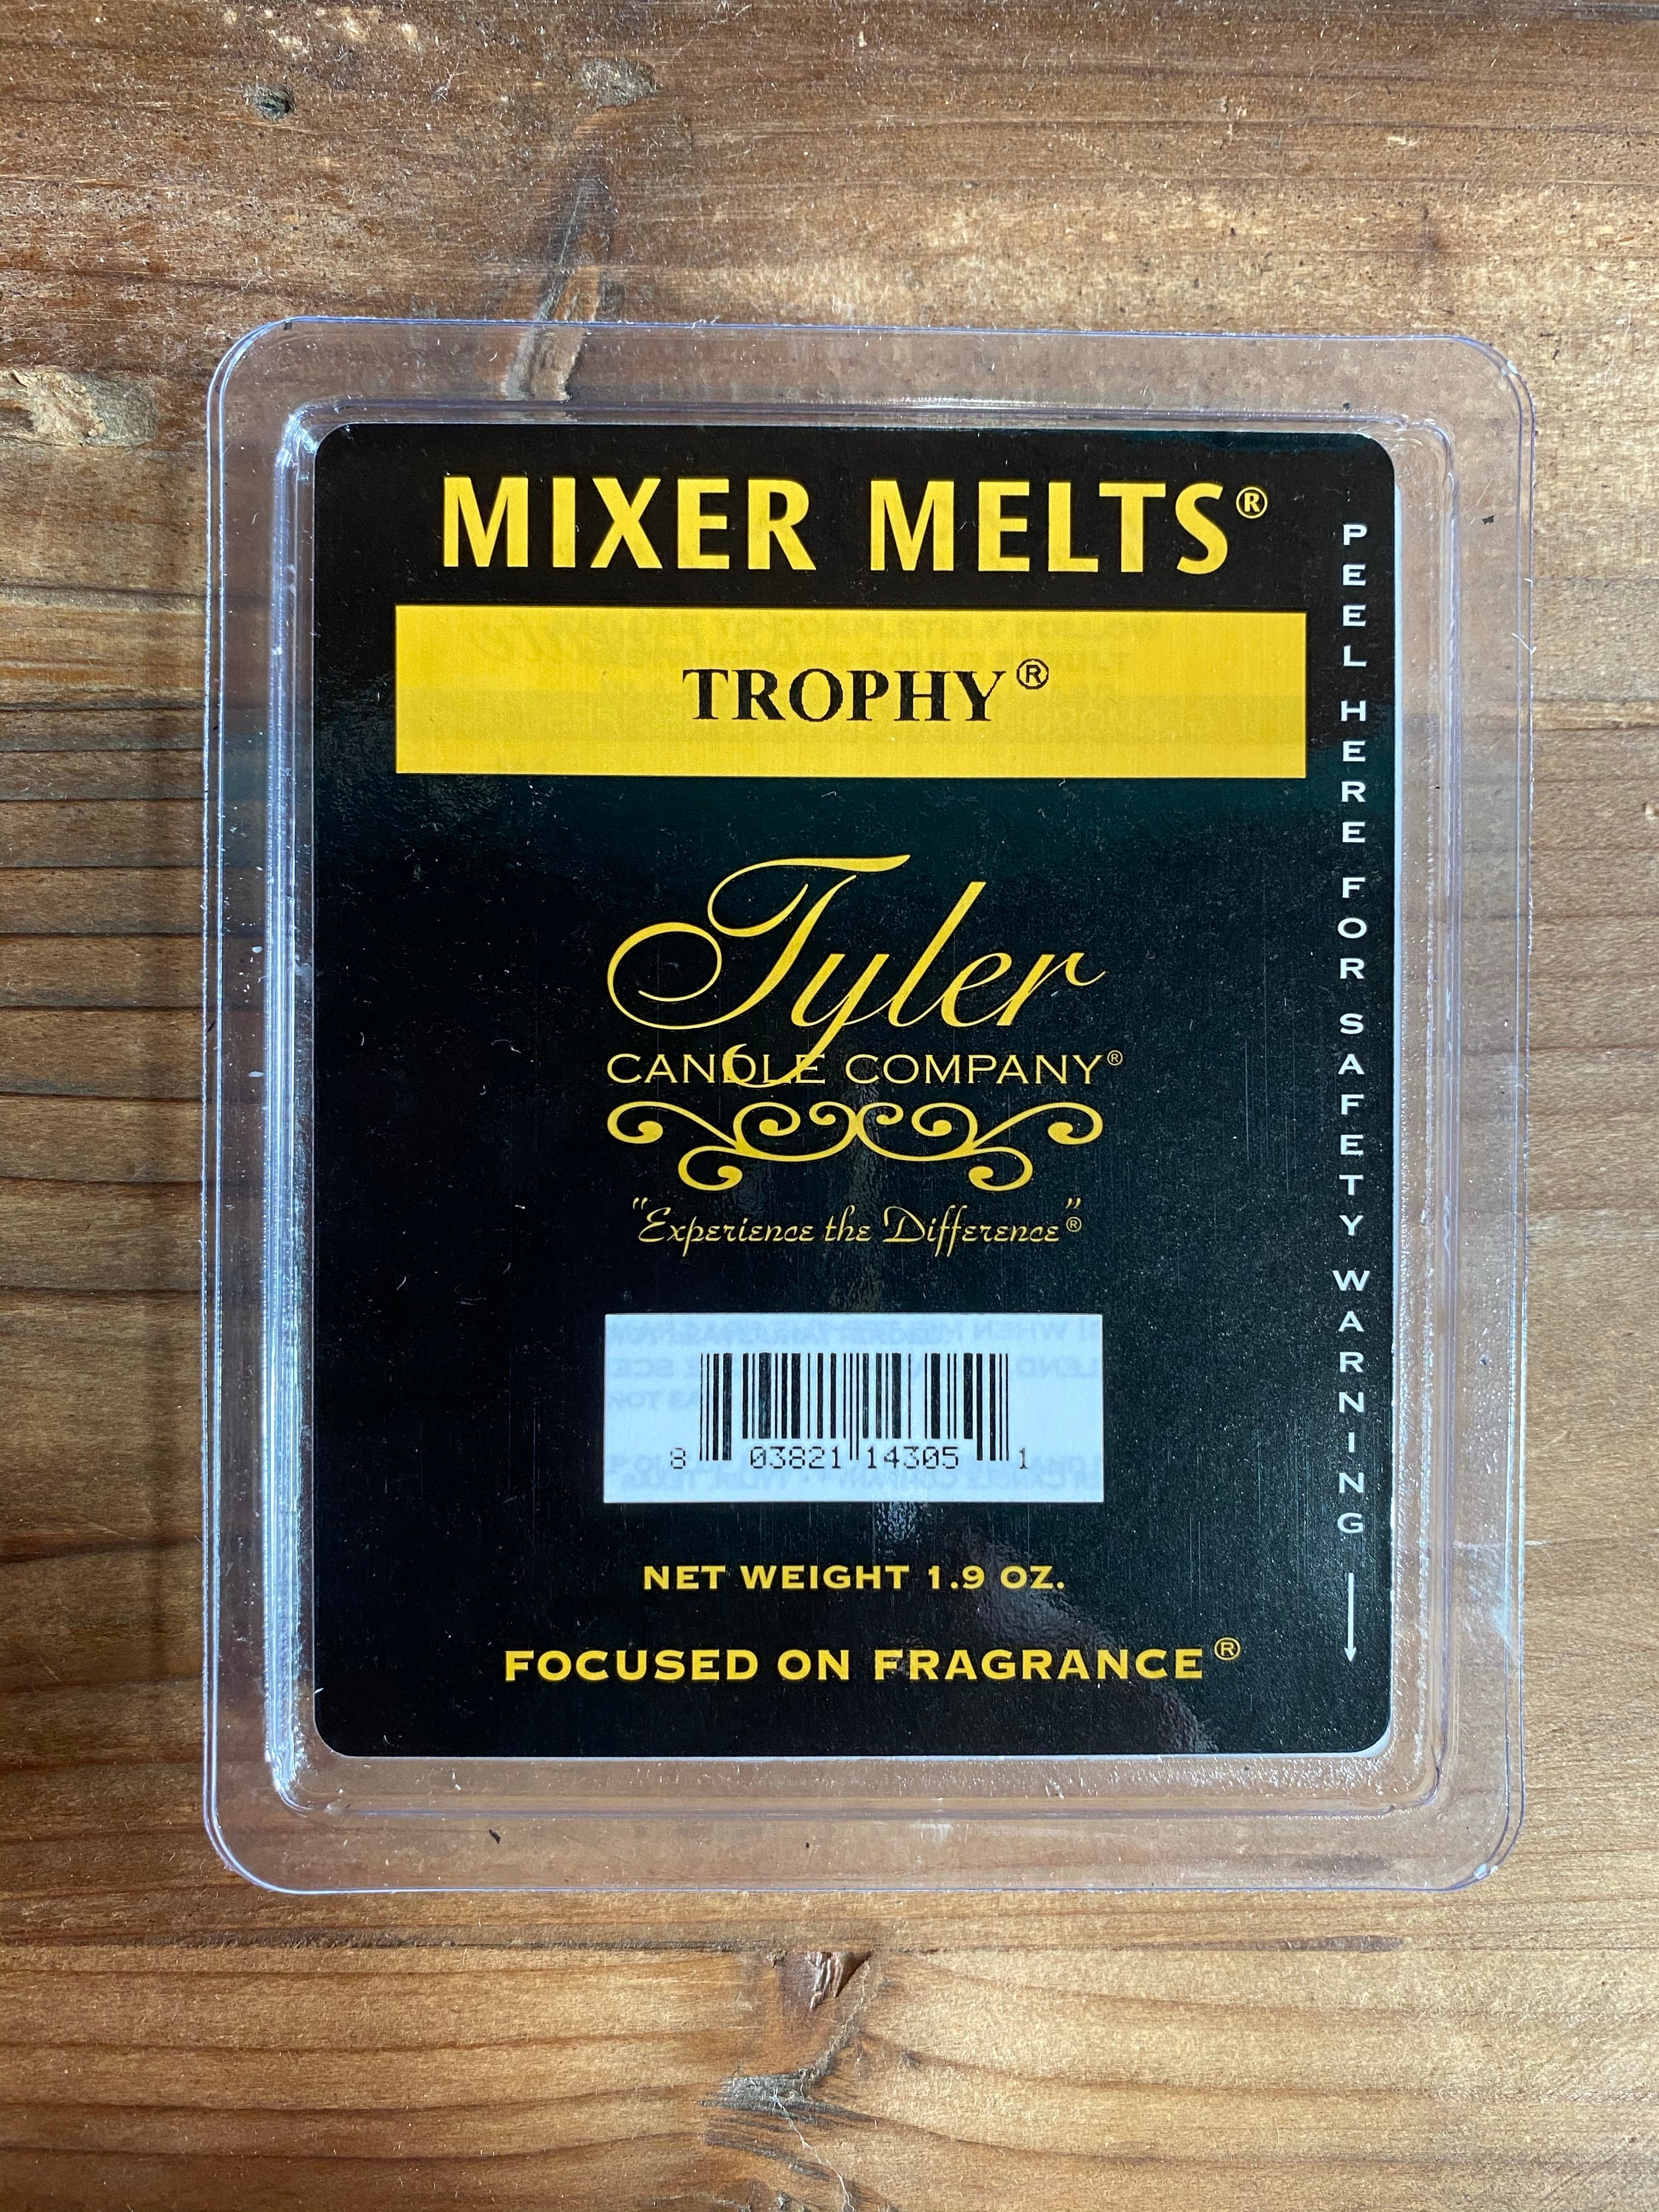 TYLER MIXER MELTS-TROPHY